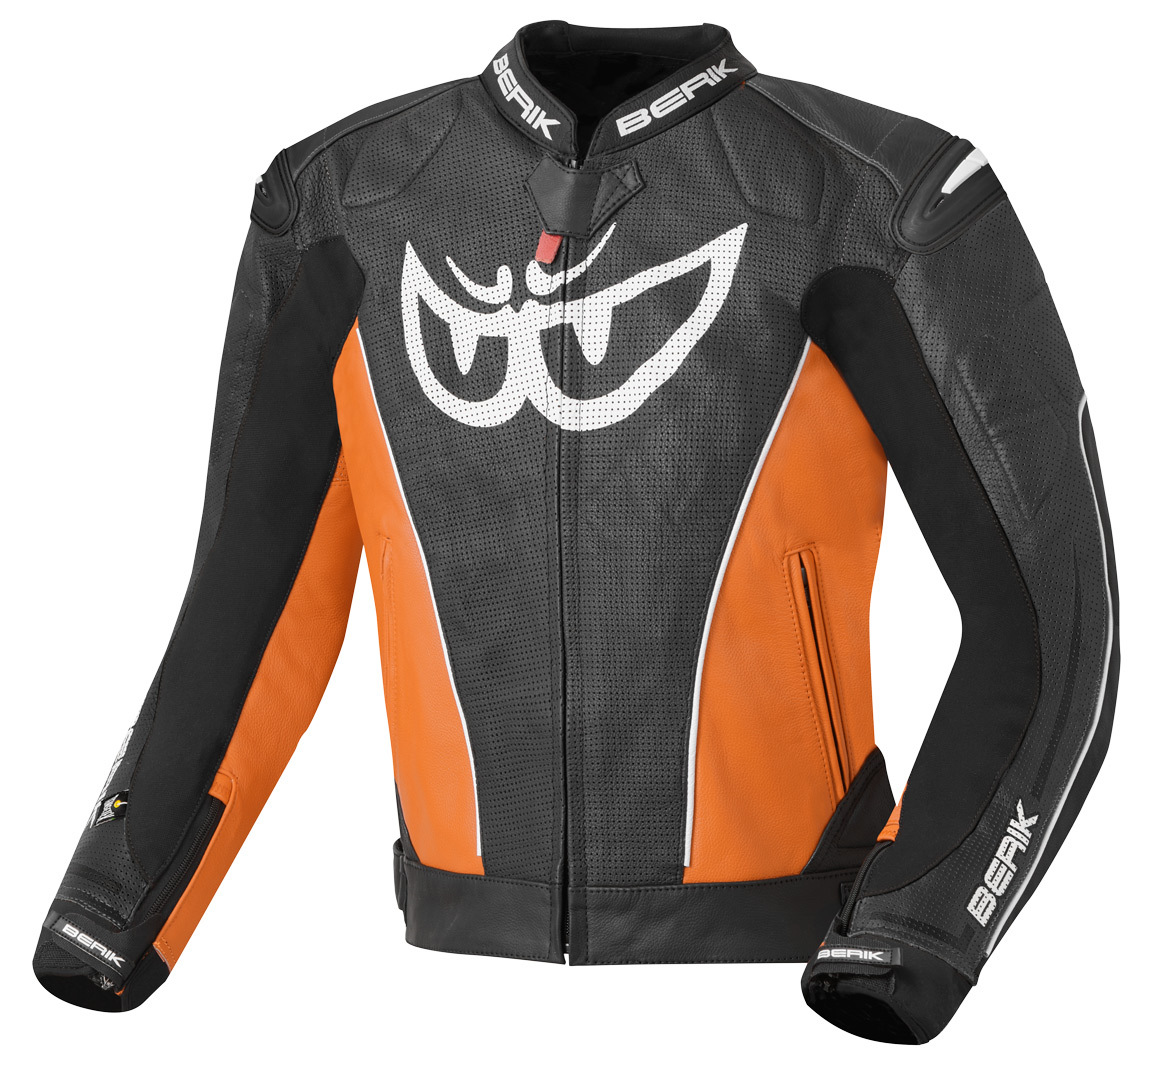 Мотоциклетная кожаная куртка Berik Street с регулируемой талией и манжетами, черный/оранжевый куртка кожаная grand canyon colby мотоциклетная черный оранжевый